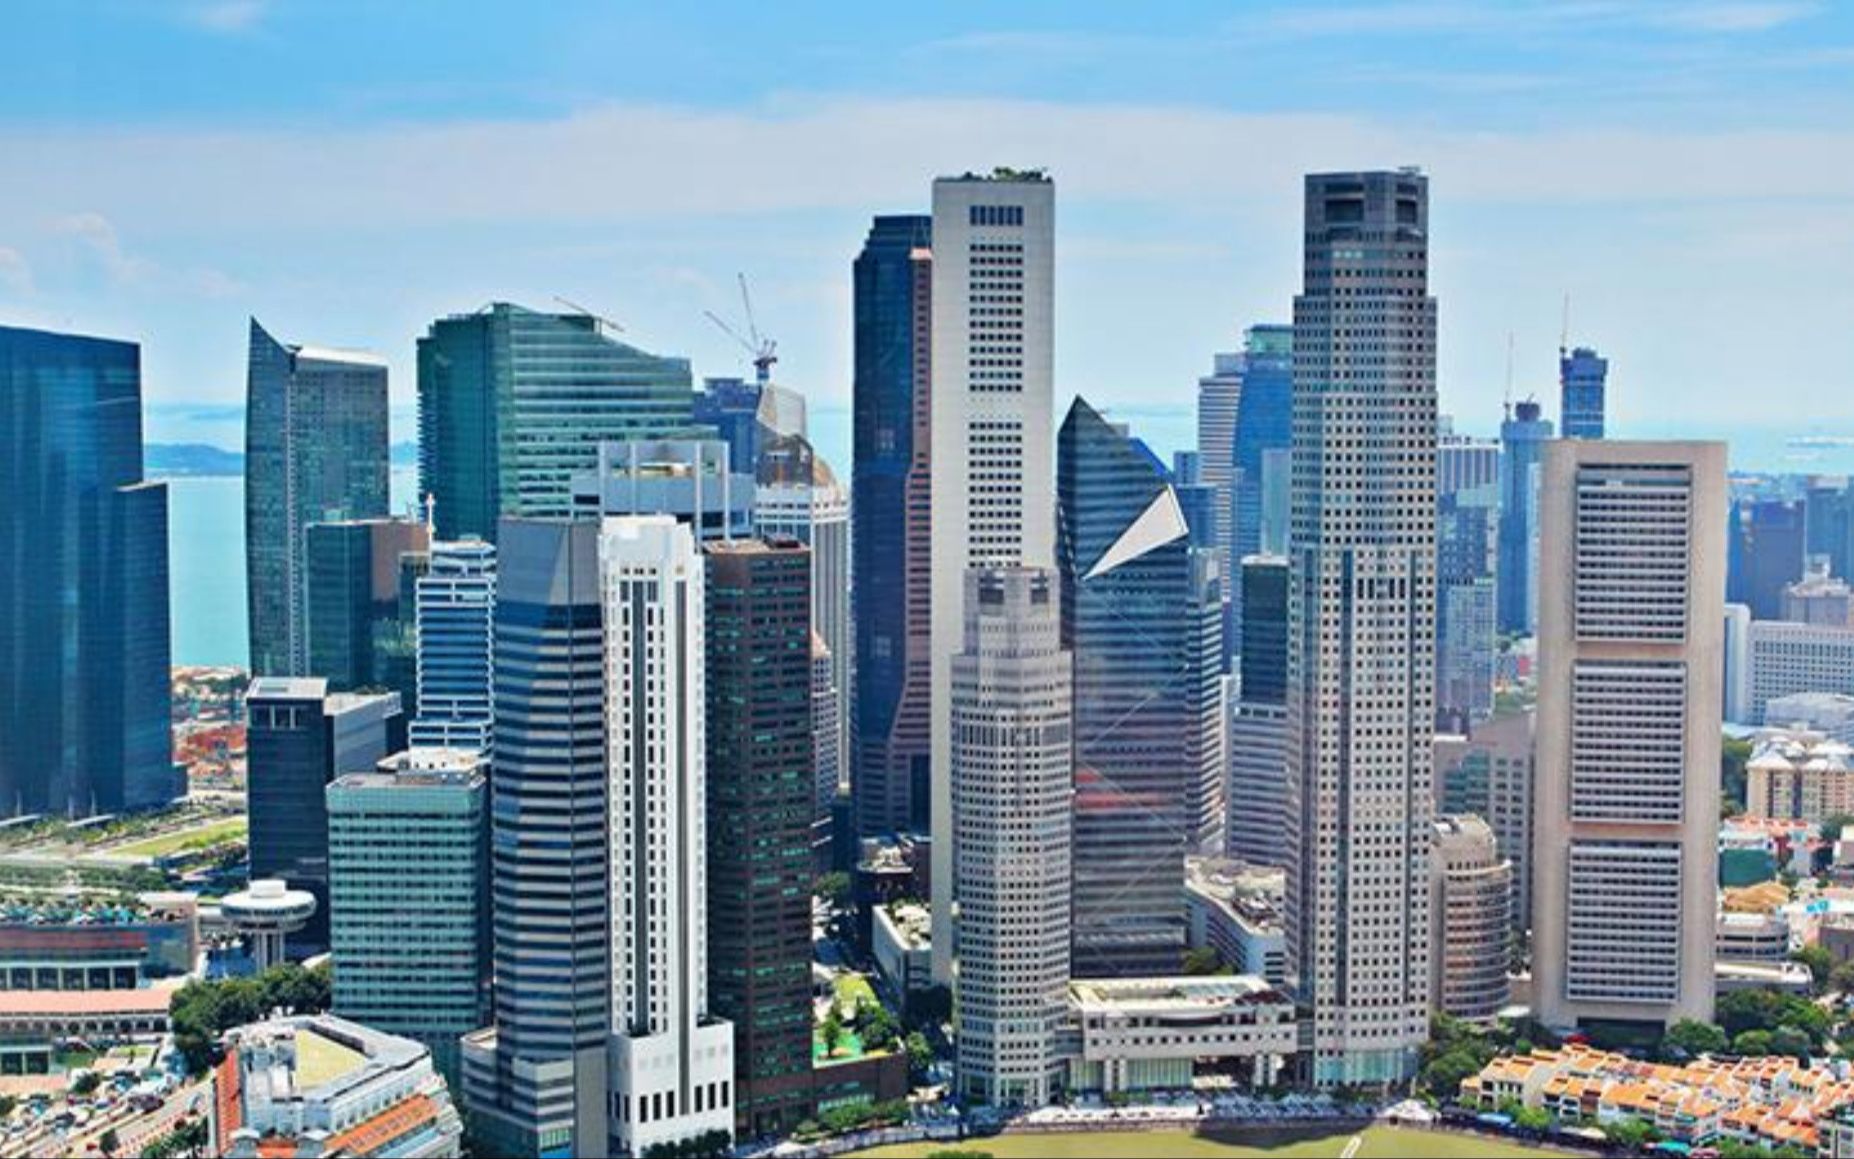 【航拍】全球城市竞争力第三名的亚洲花园城市——新加坡/Singapore